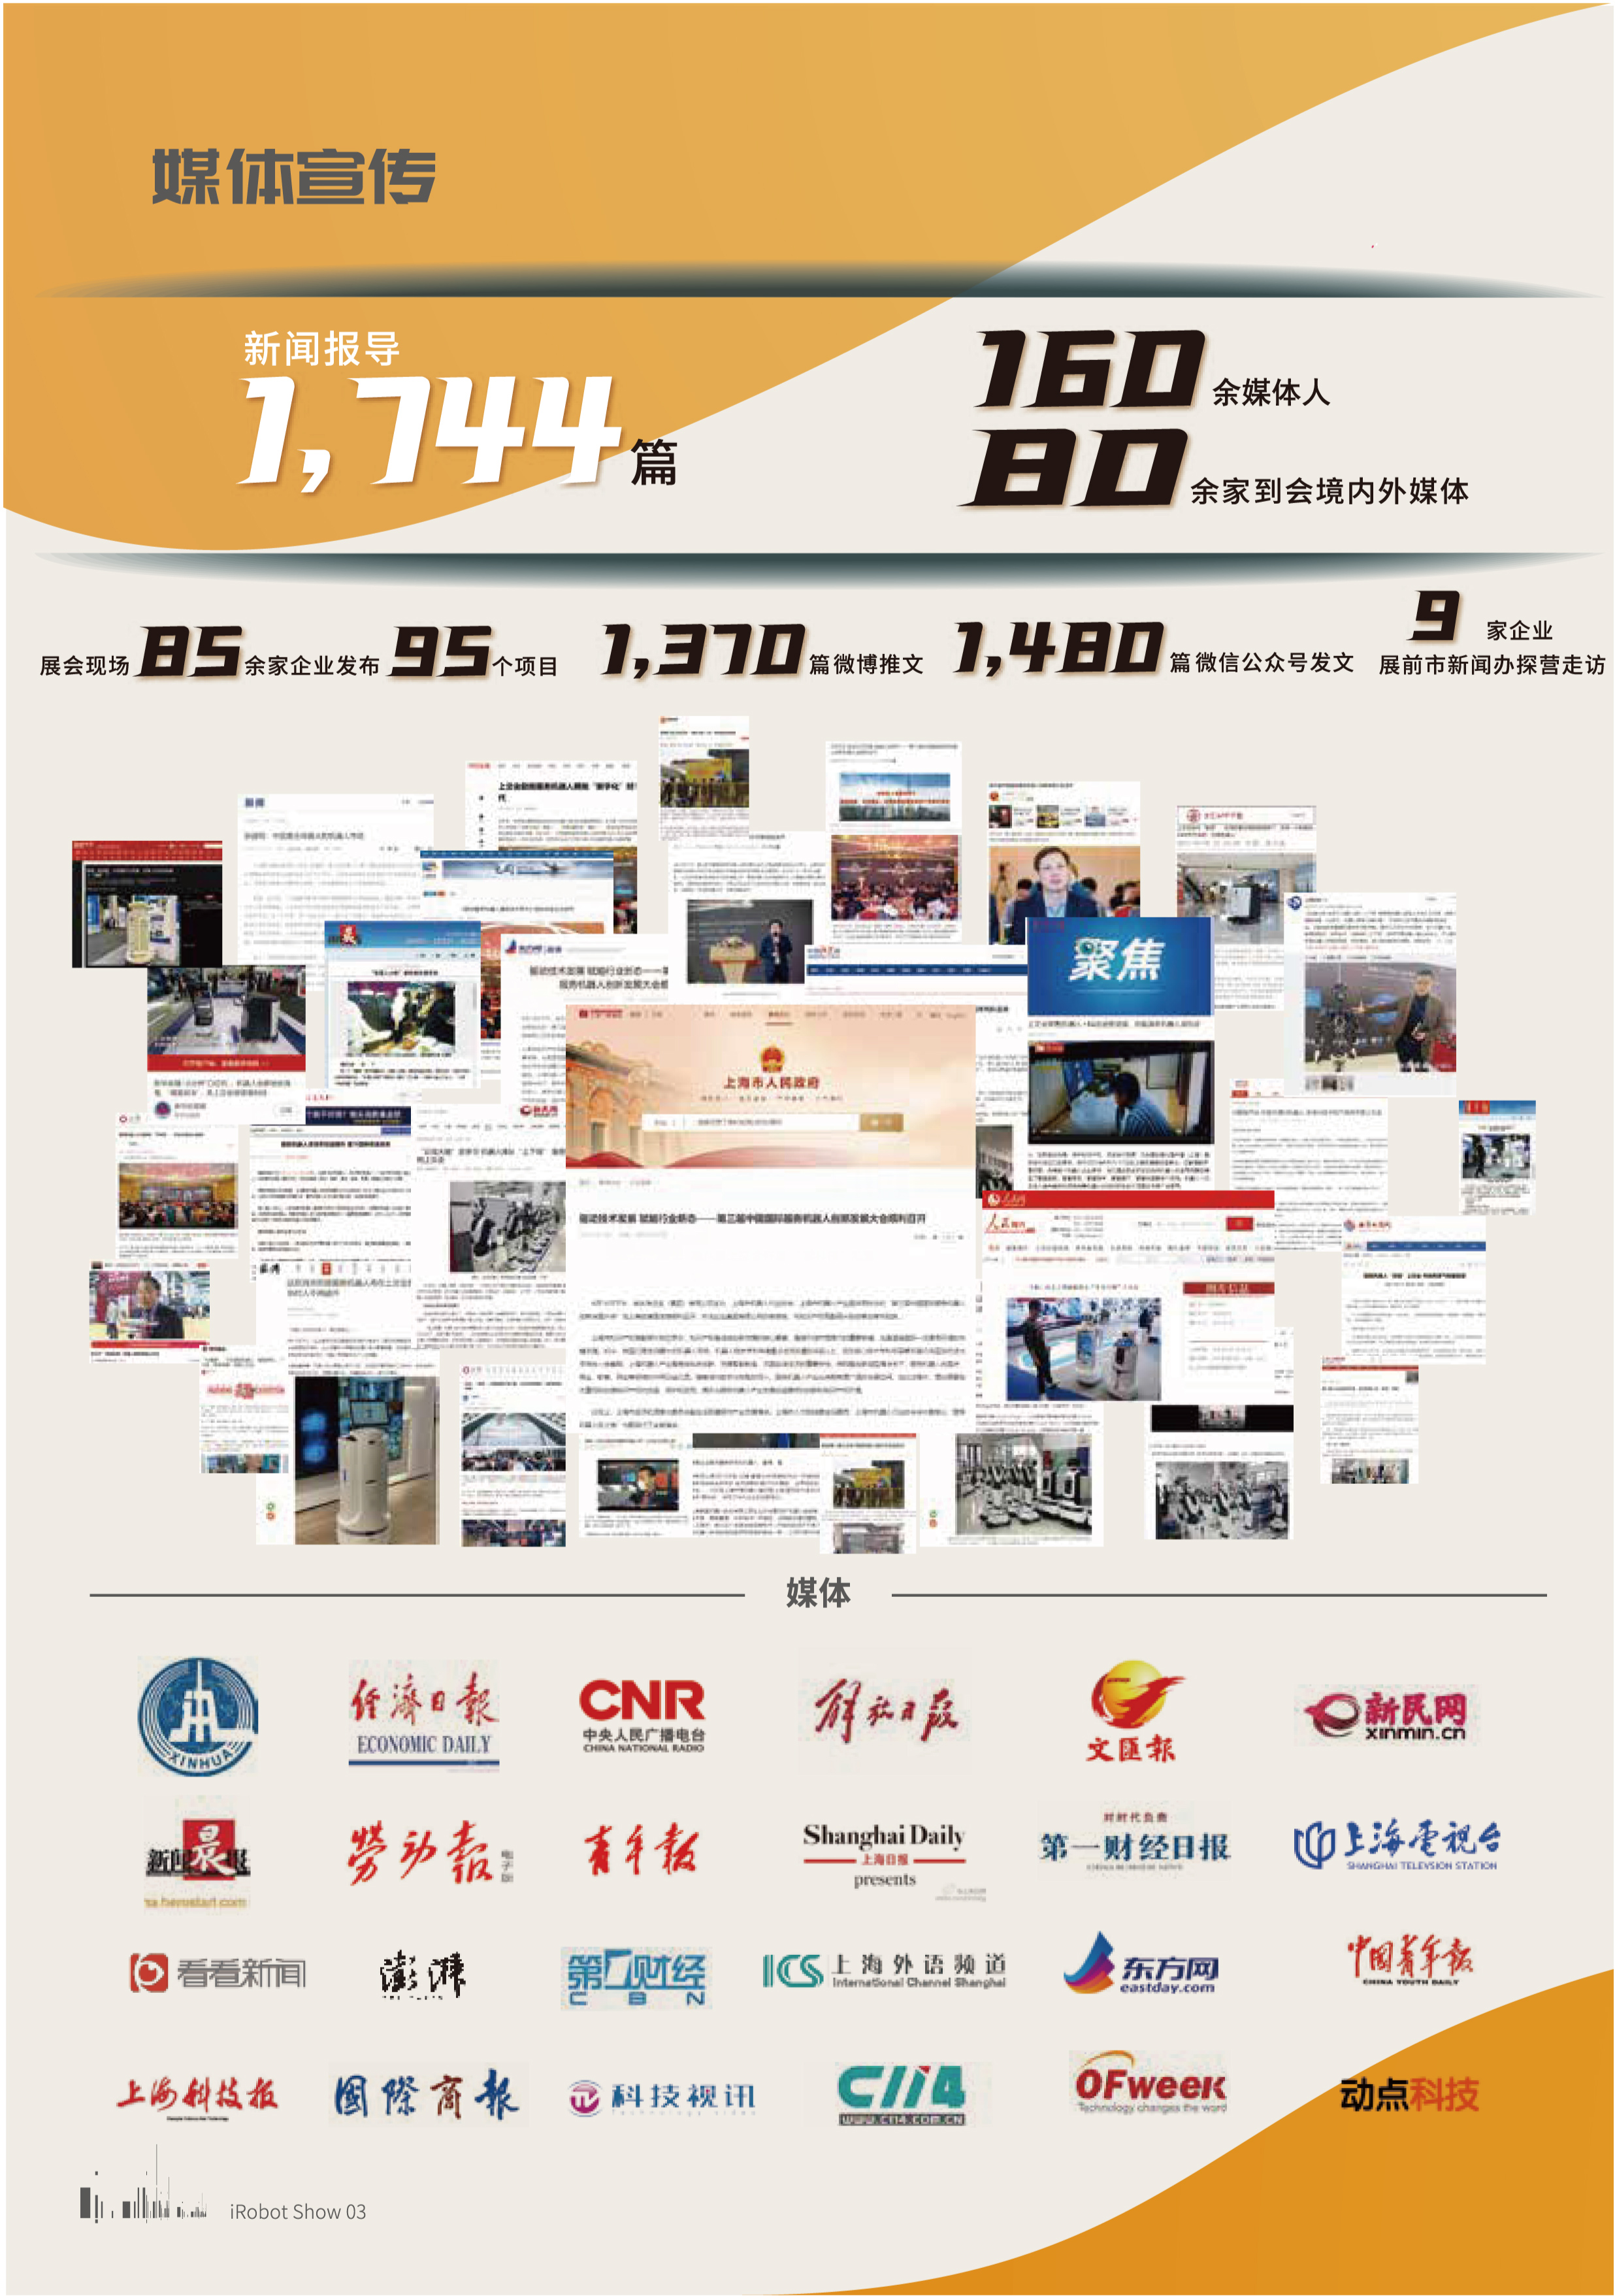 第四届中国国际服务机器人创新发展大会（暨2022年机器人应用展iRobot Show）_门票优惠_活动家官网报名